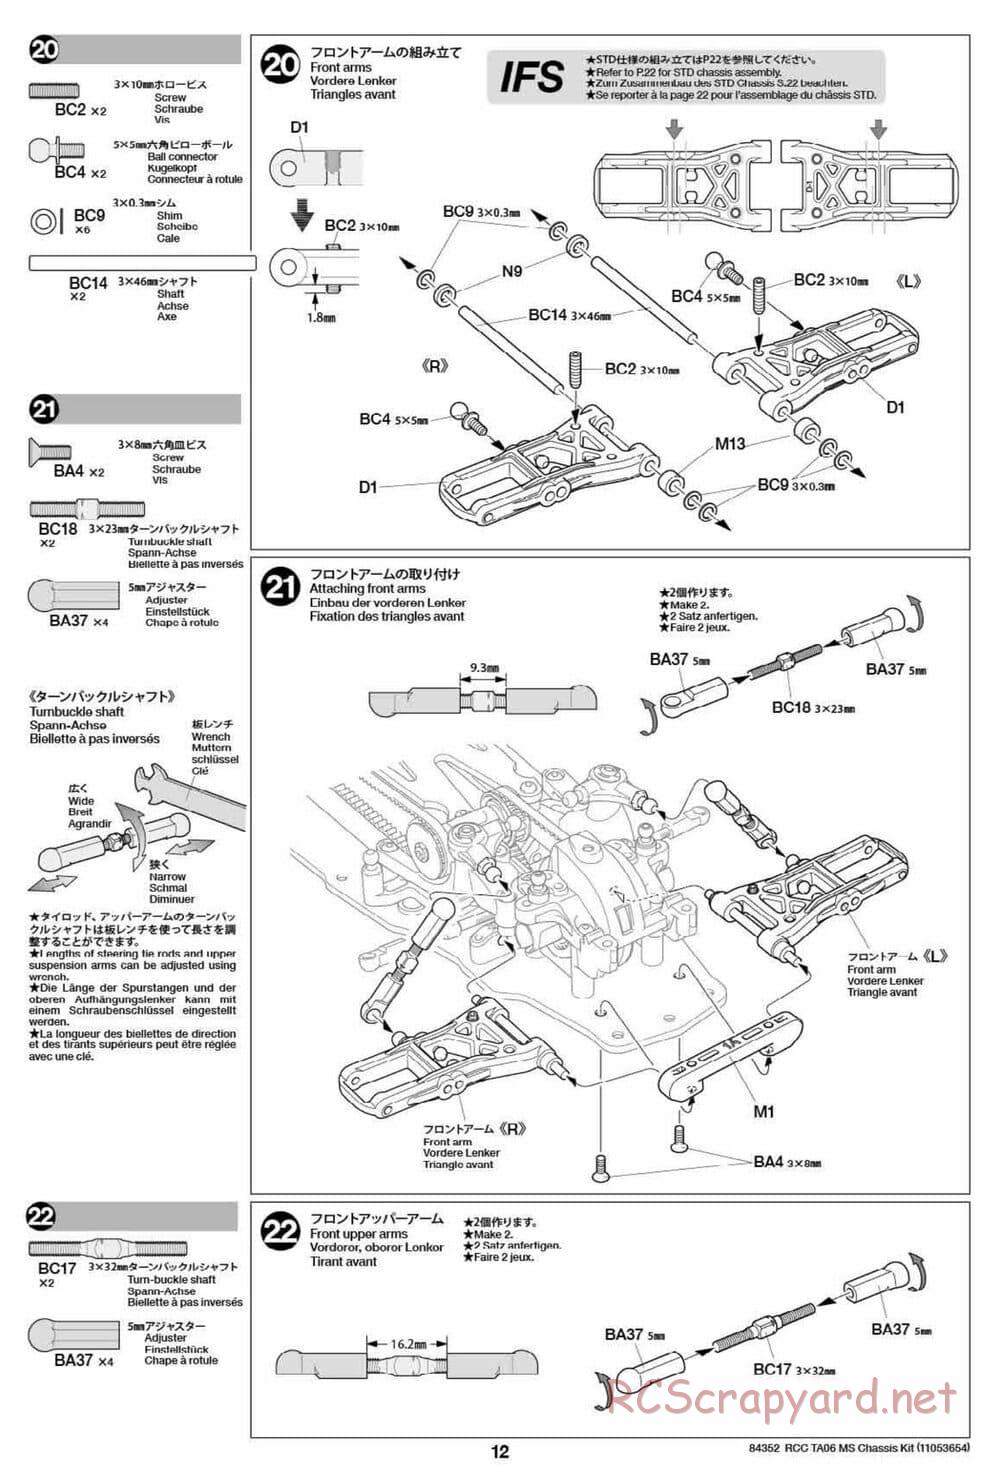 Tamiya - TA06 MS Chassis - Manual - Page 12